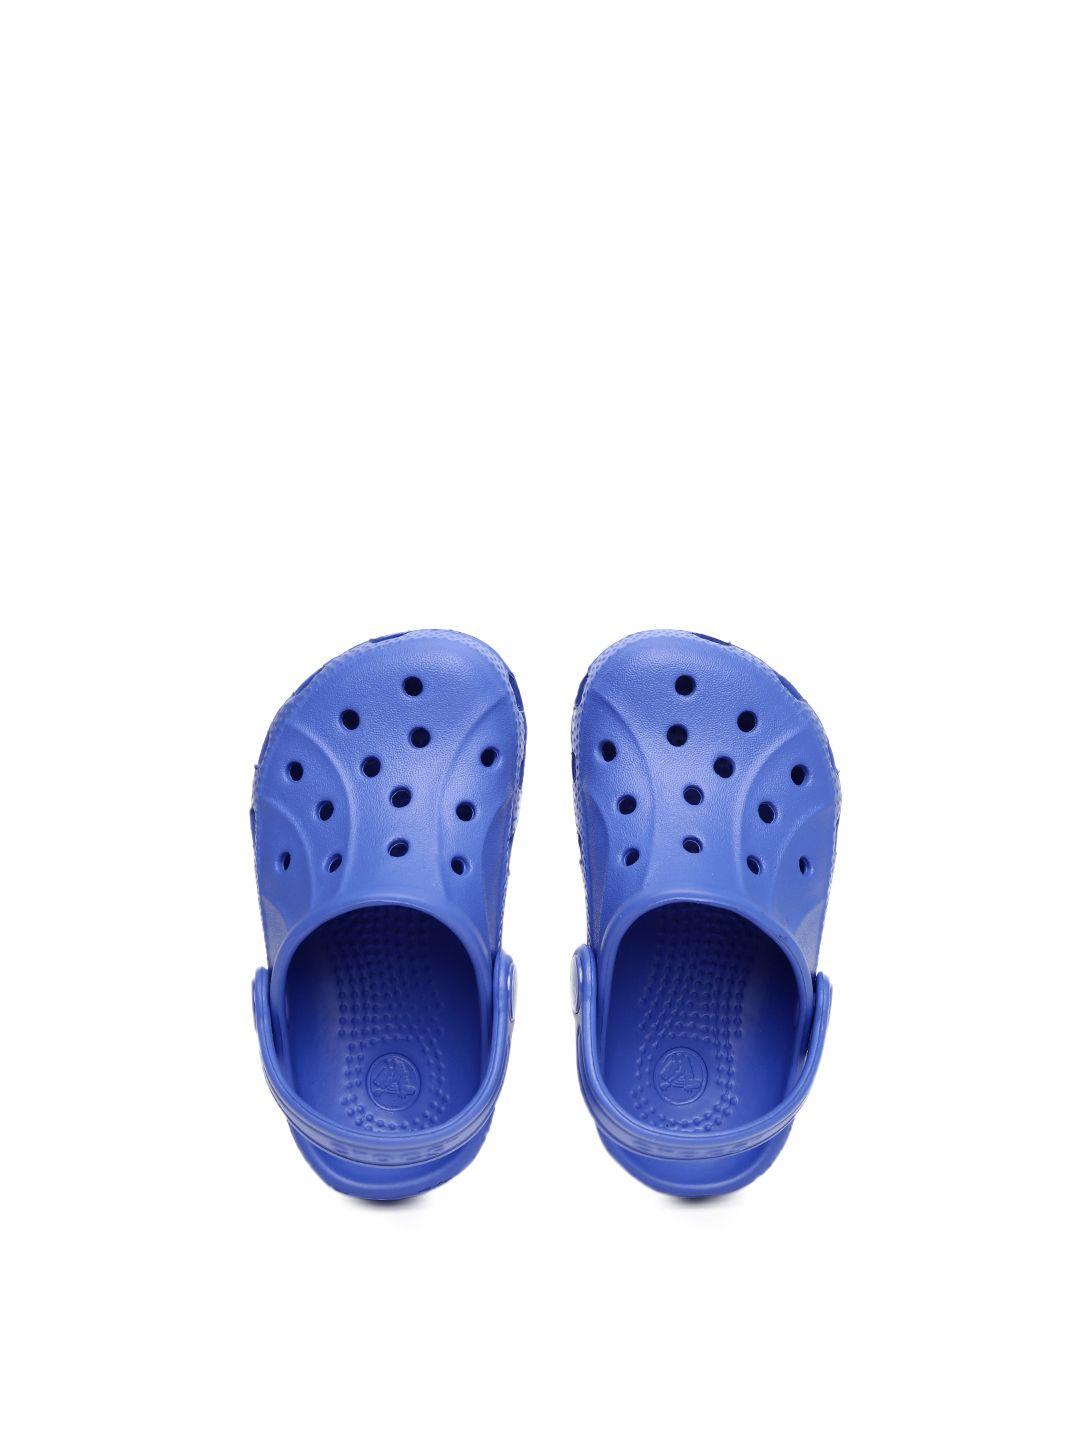 crocs-girls-blue-ralen-clogs